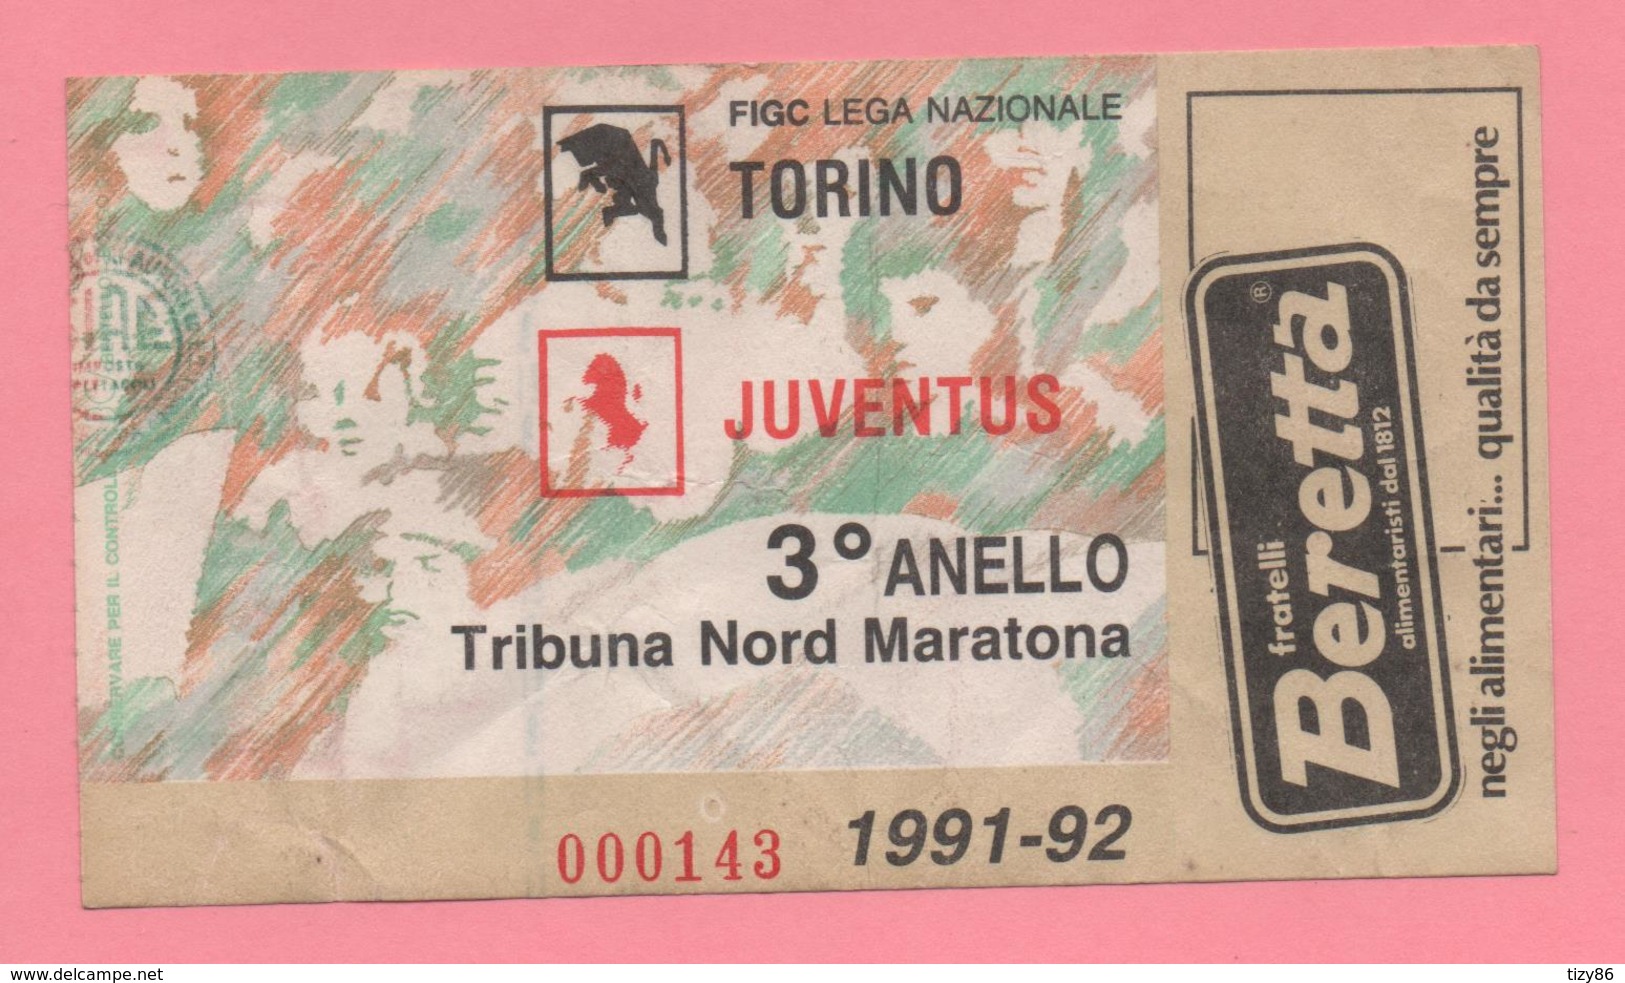 Biglietto D'ingresso Stadio Torino Juventus 1991-92 - Tickets - Entradas